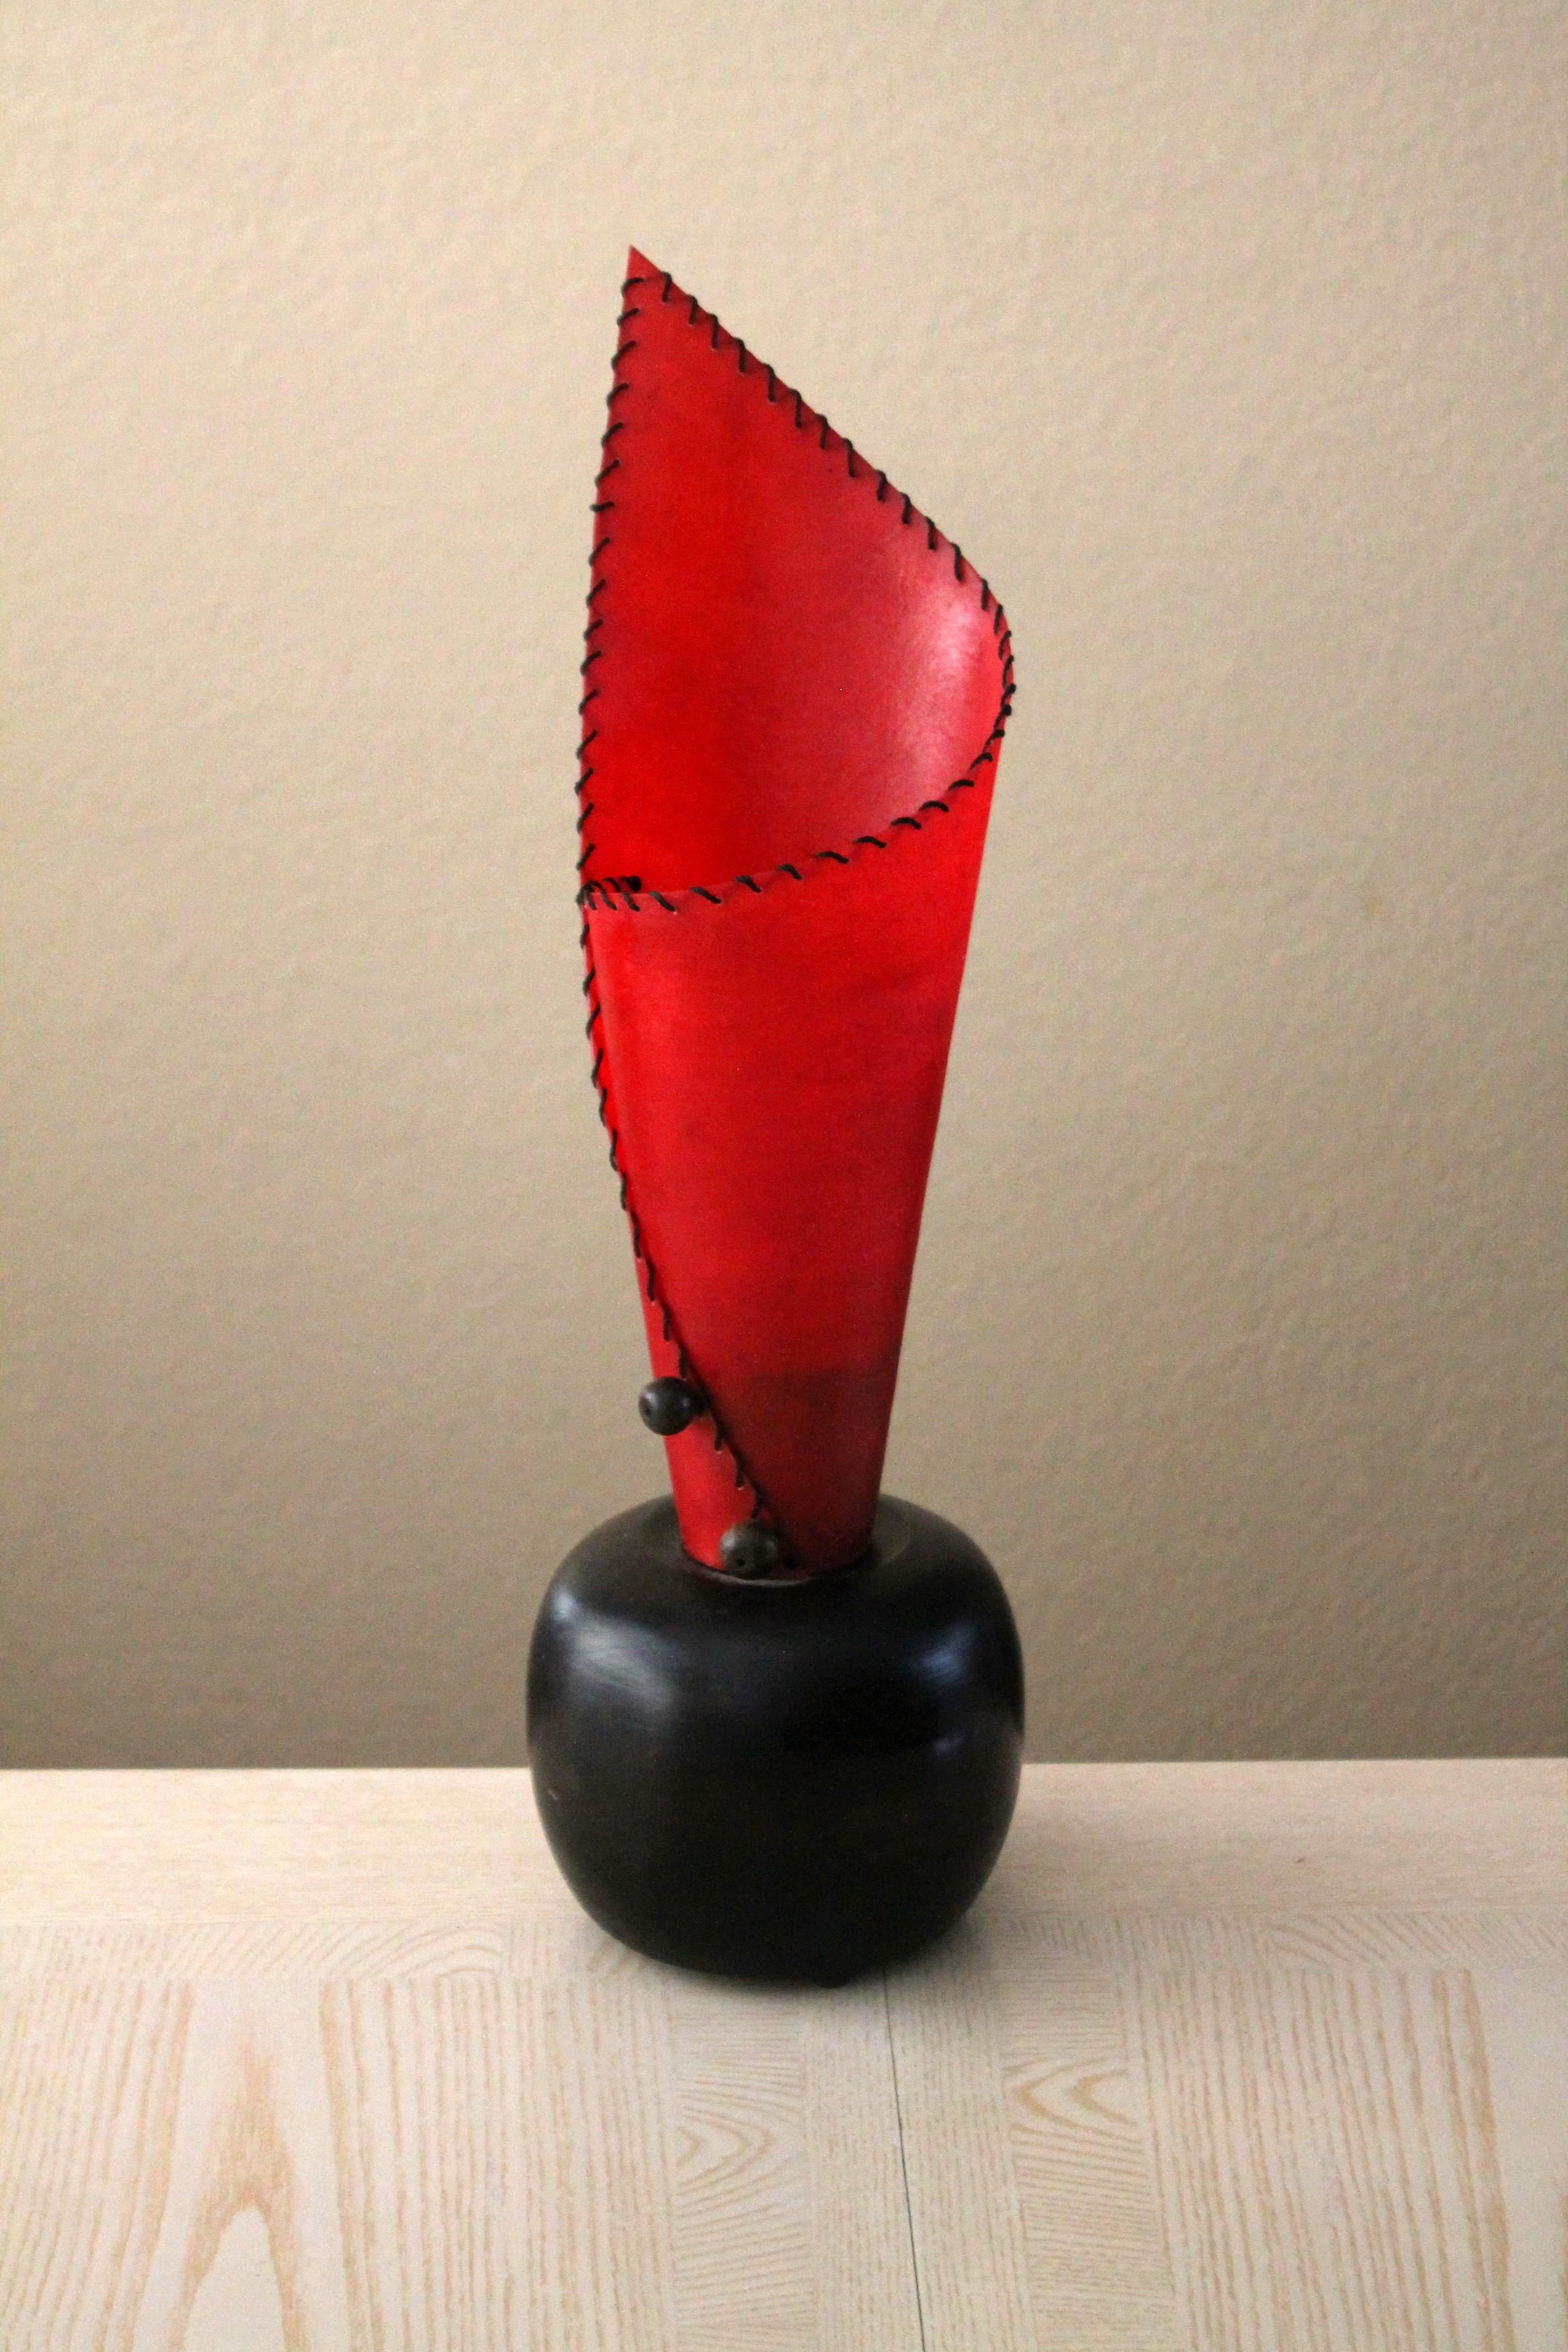 Merveilleux !

Fabuleux post-moderne des années 80
Lampe de table conique en fibre de verre !

À la manière d'Ettore Sottsass


Cette lampe en fibre de verre, haute et ultra rouge, est un fabuleux artefact du mouvement post-moderne des années 1980.